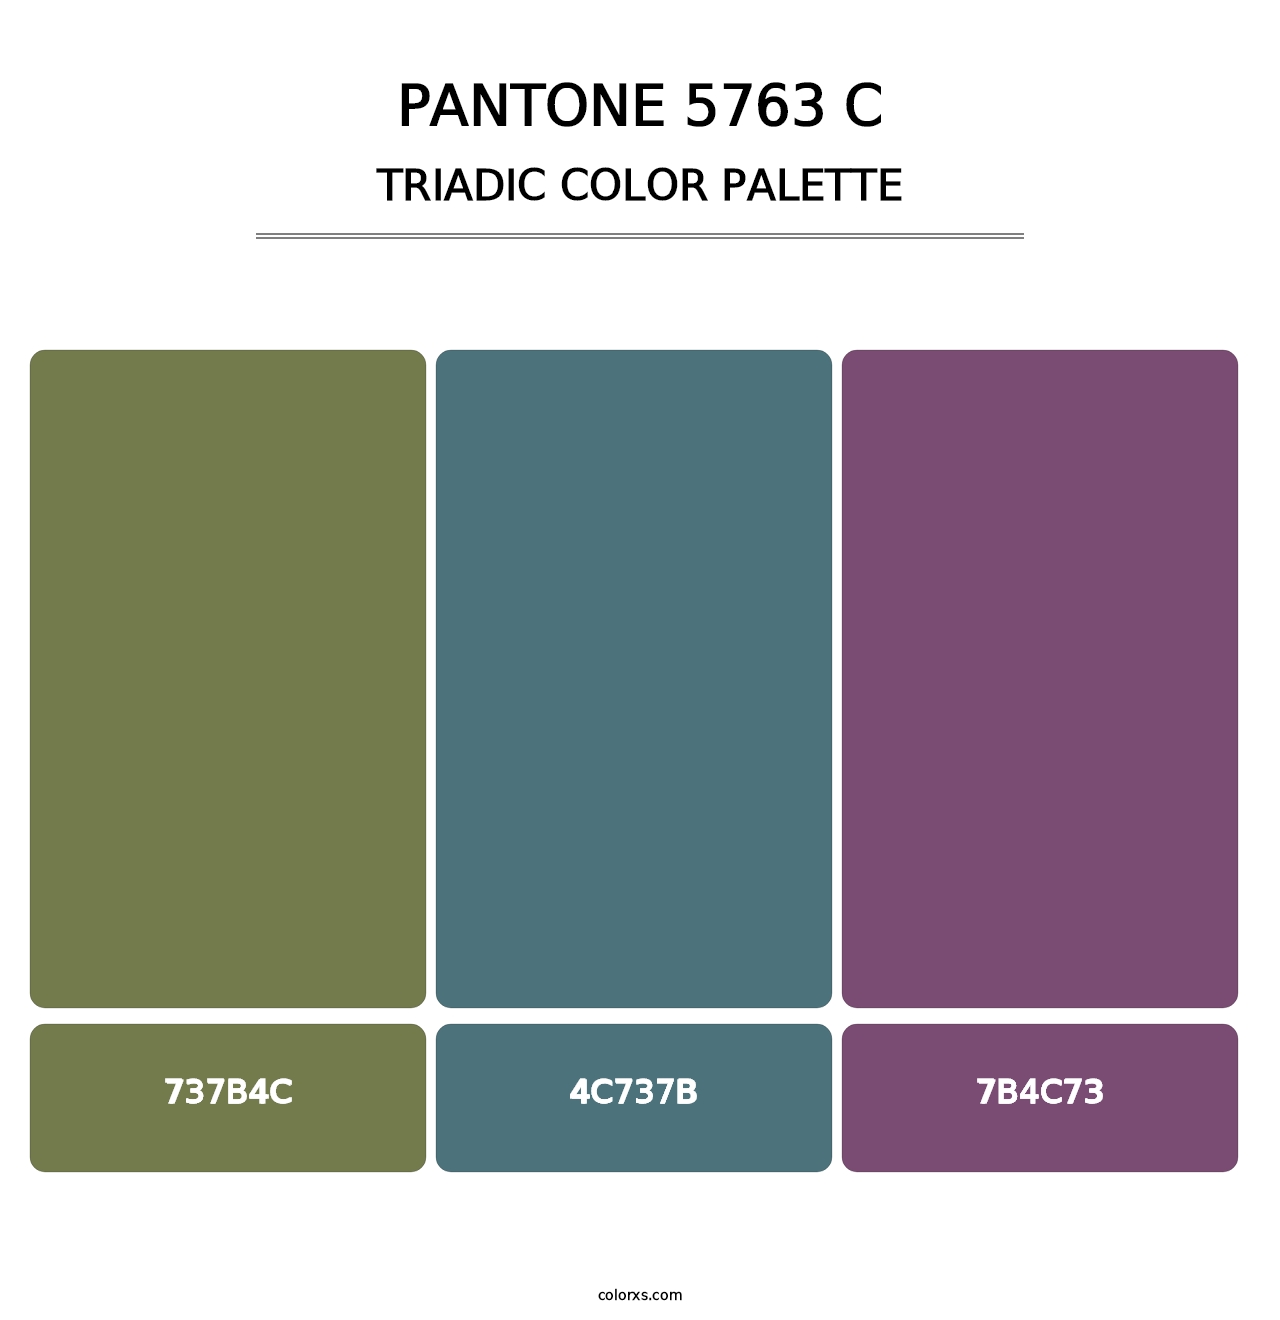 PANTONE 5763 C - Triadic Color Palette